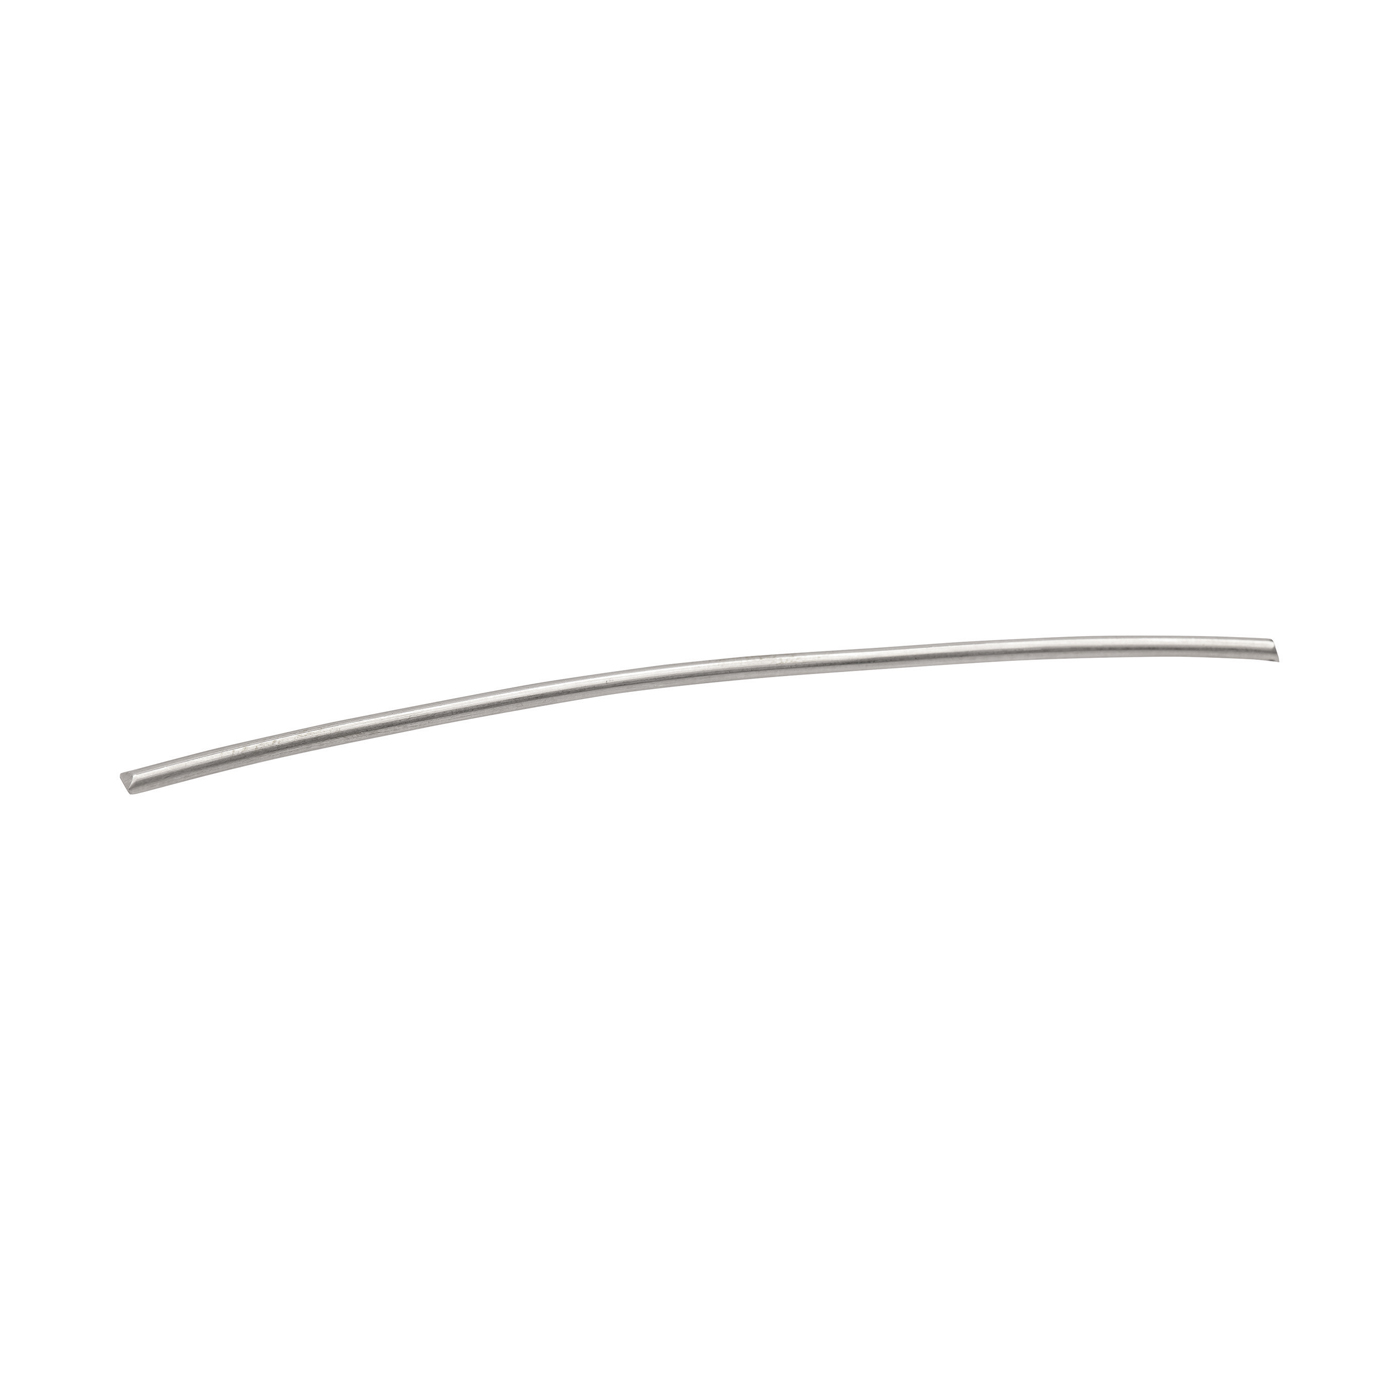 Round Wire, 590WG, ø 3 mm, Length 8 cm - 1 piece